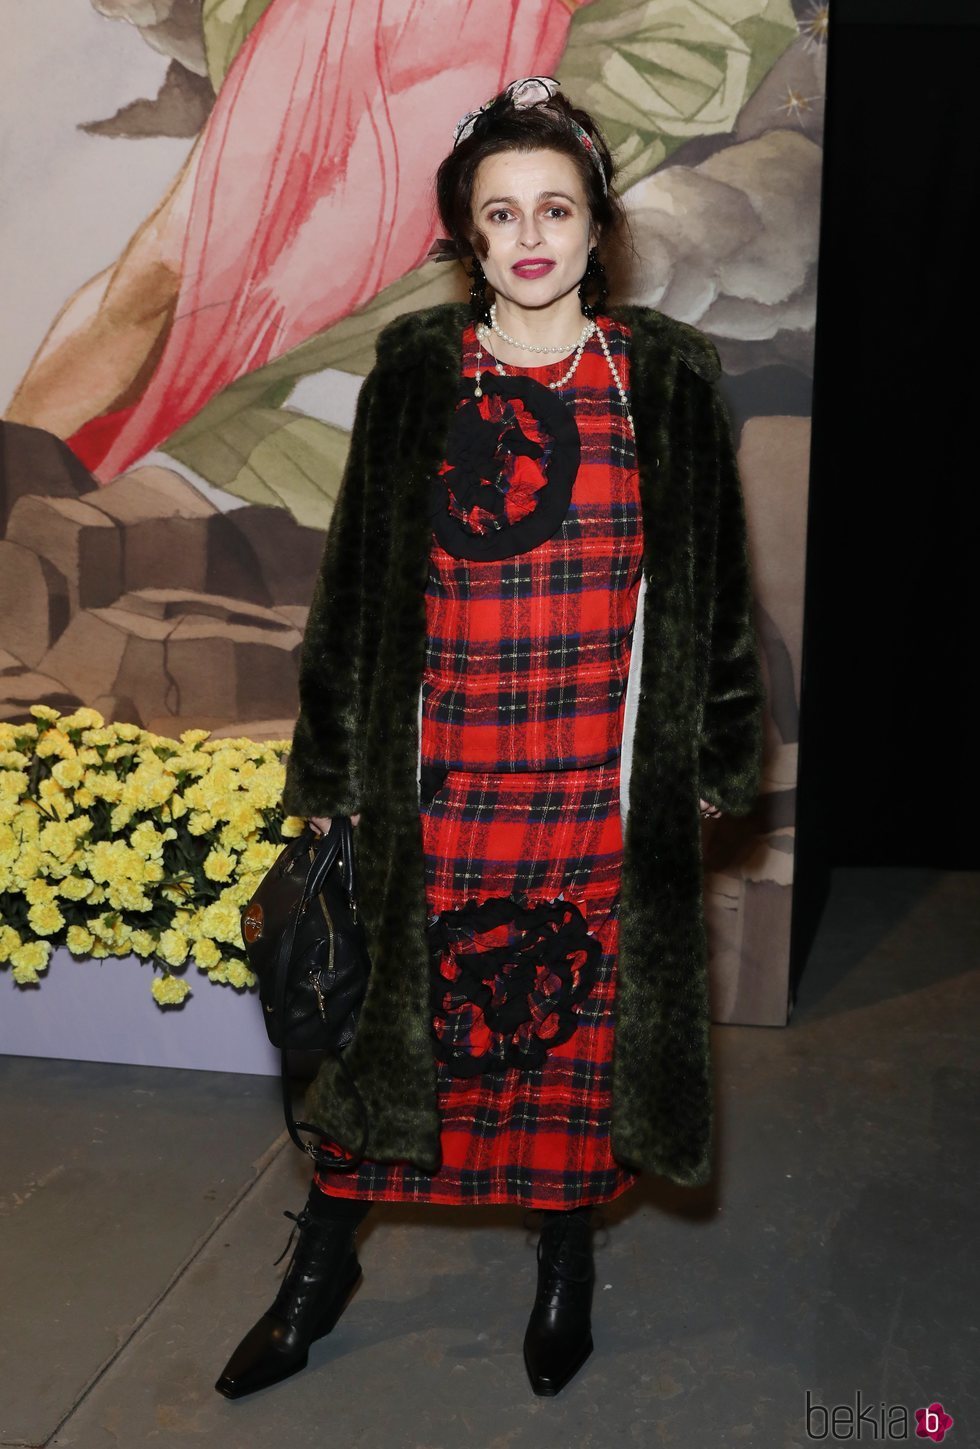 Helena Bonham Carter acudiendo a la London Fashion Week 2019 con conjunto escocés